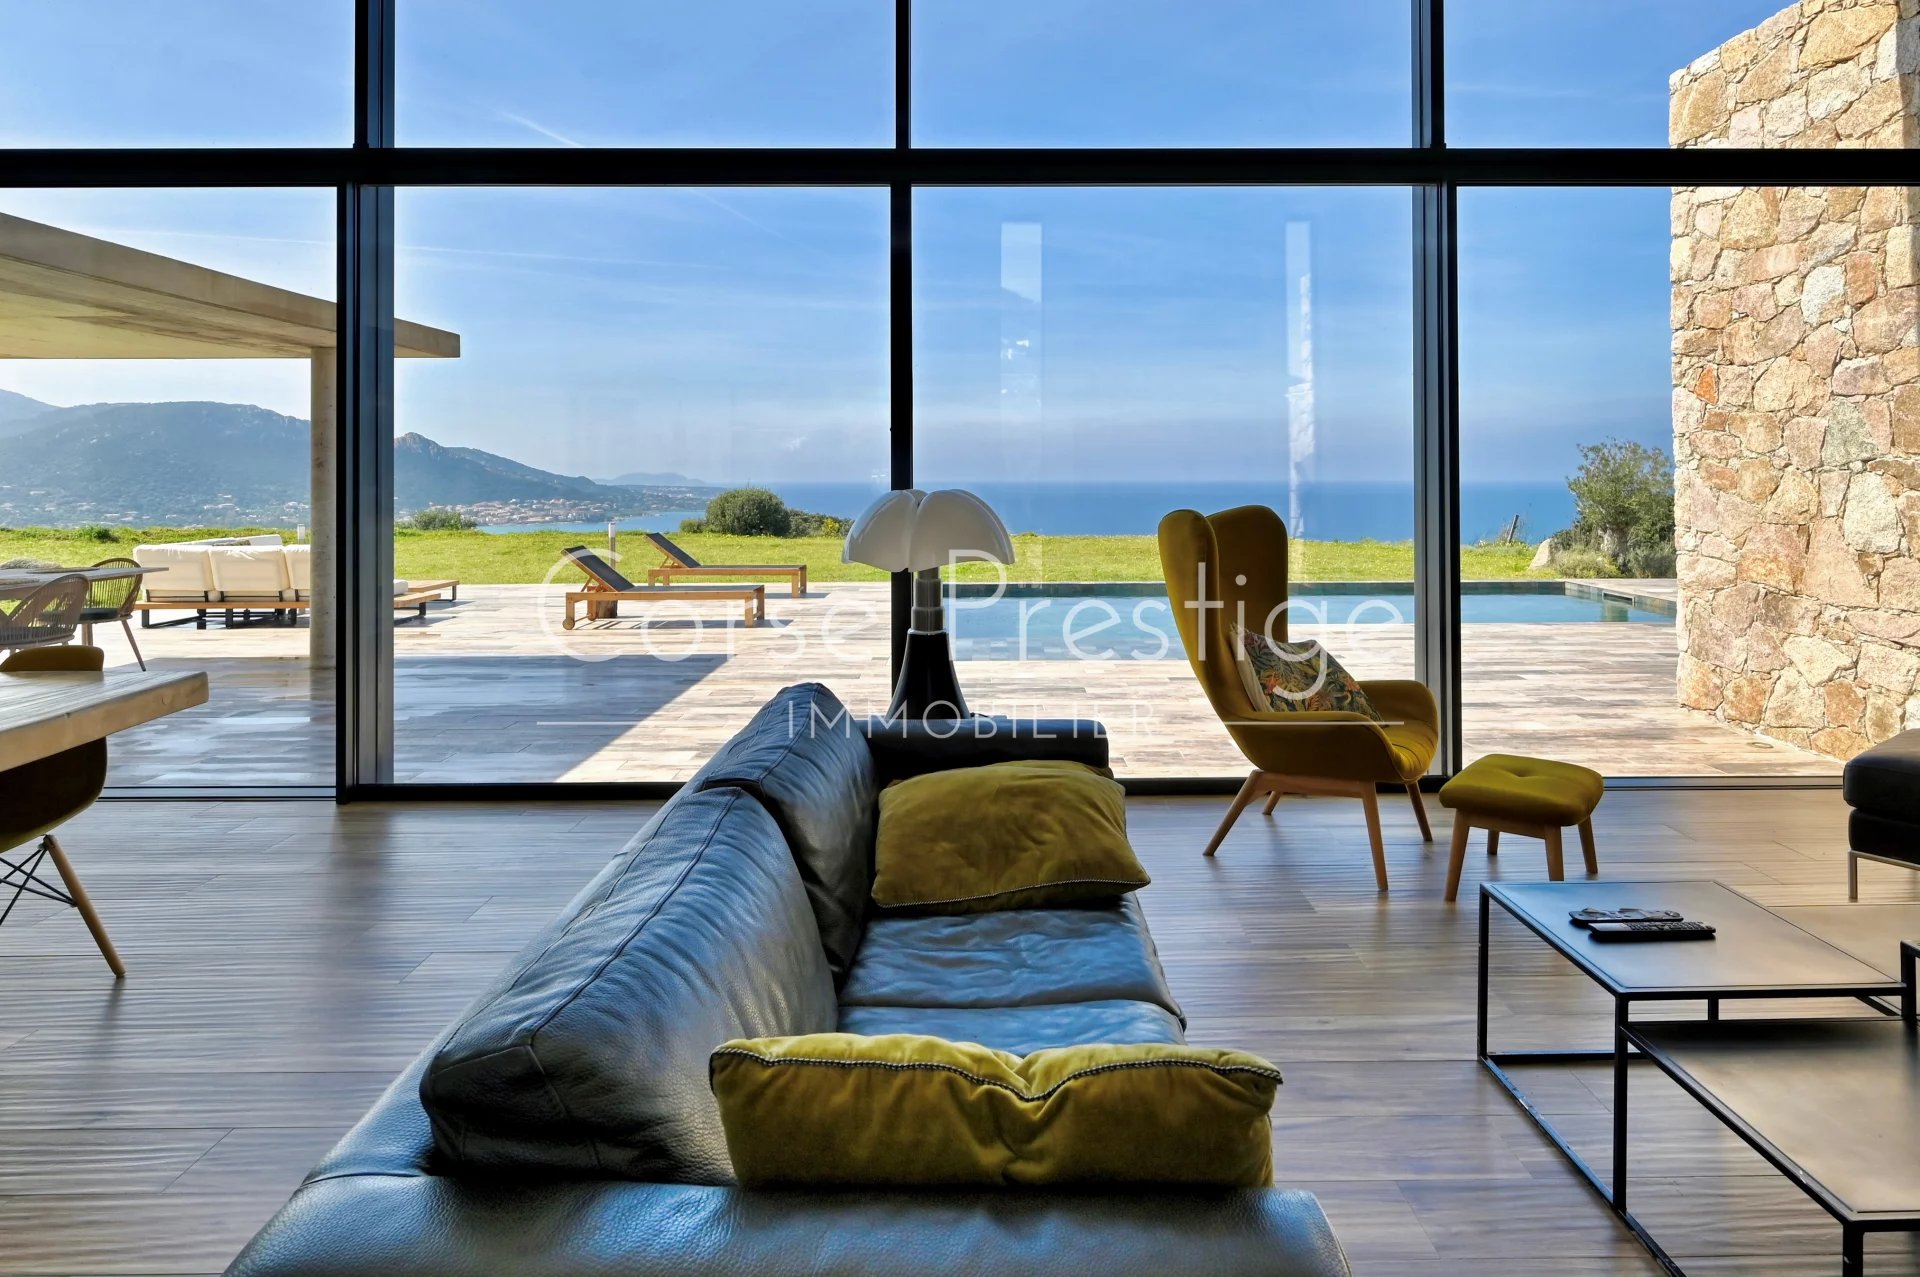 contemporary architect villa for sale in corsica - breathtaking sea views - corbara, north corsica image1